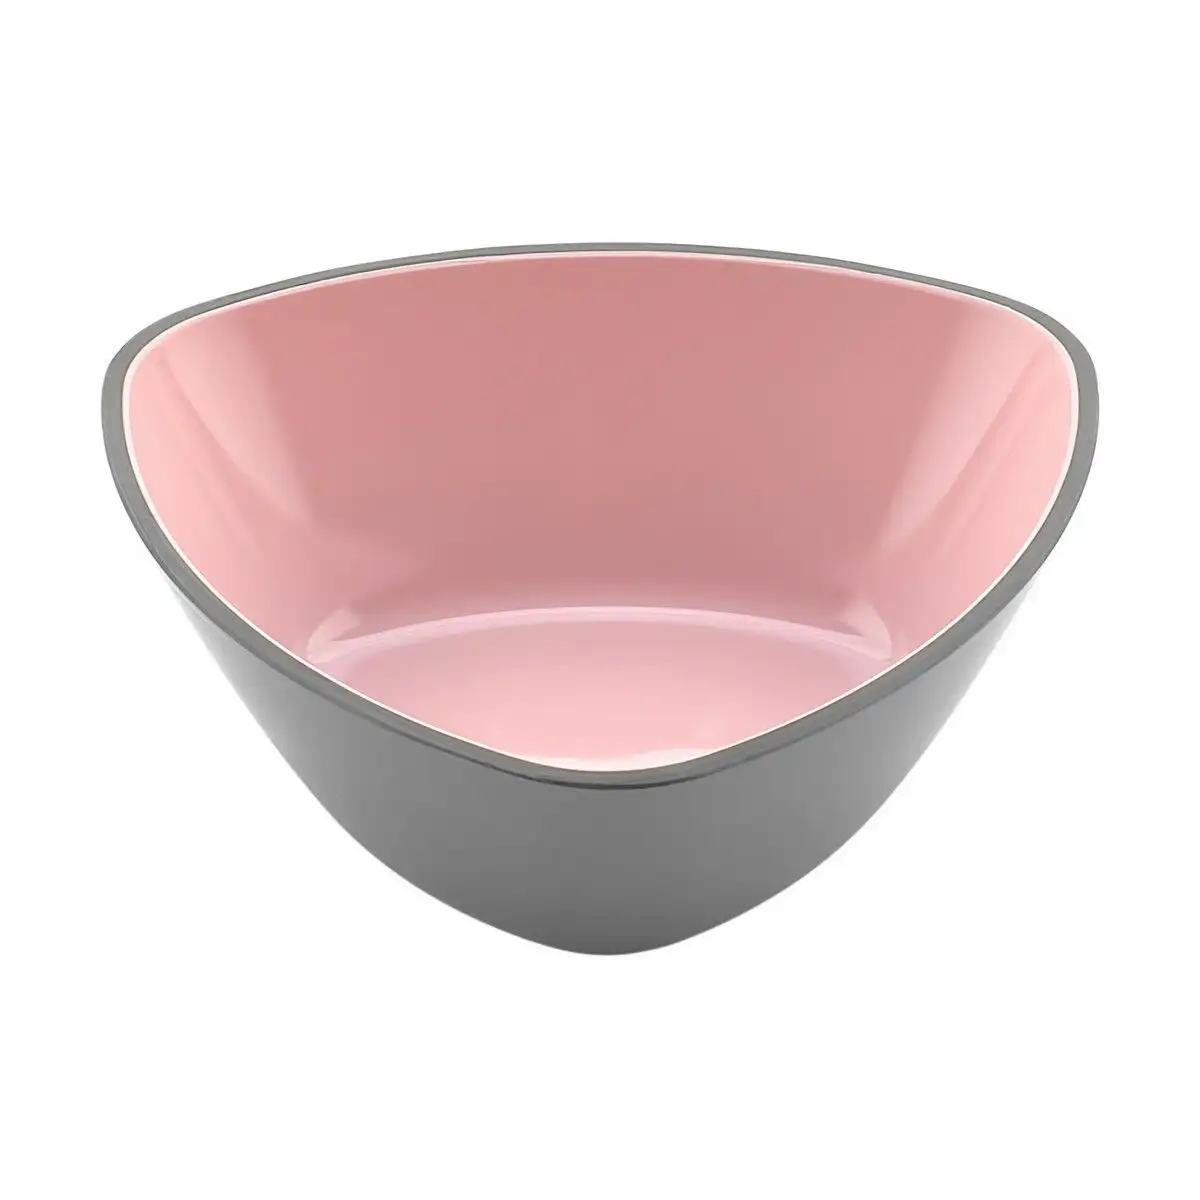 Bol melamine triangulaire rose gris 13 x 4 5 cm_5018. DIAYTAR SENEGAL - Où la Qualité et la Diversité Fusionnent. Explorez notre boutique en ligne pour découvrir une gamme variée de produits qui incarnent l'excellence et l'authenticité.